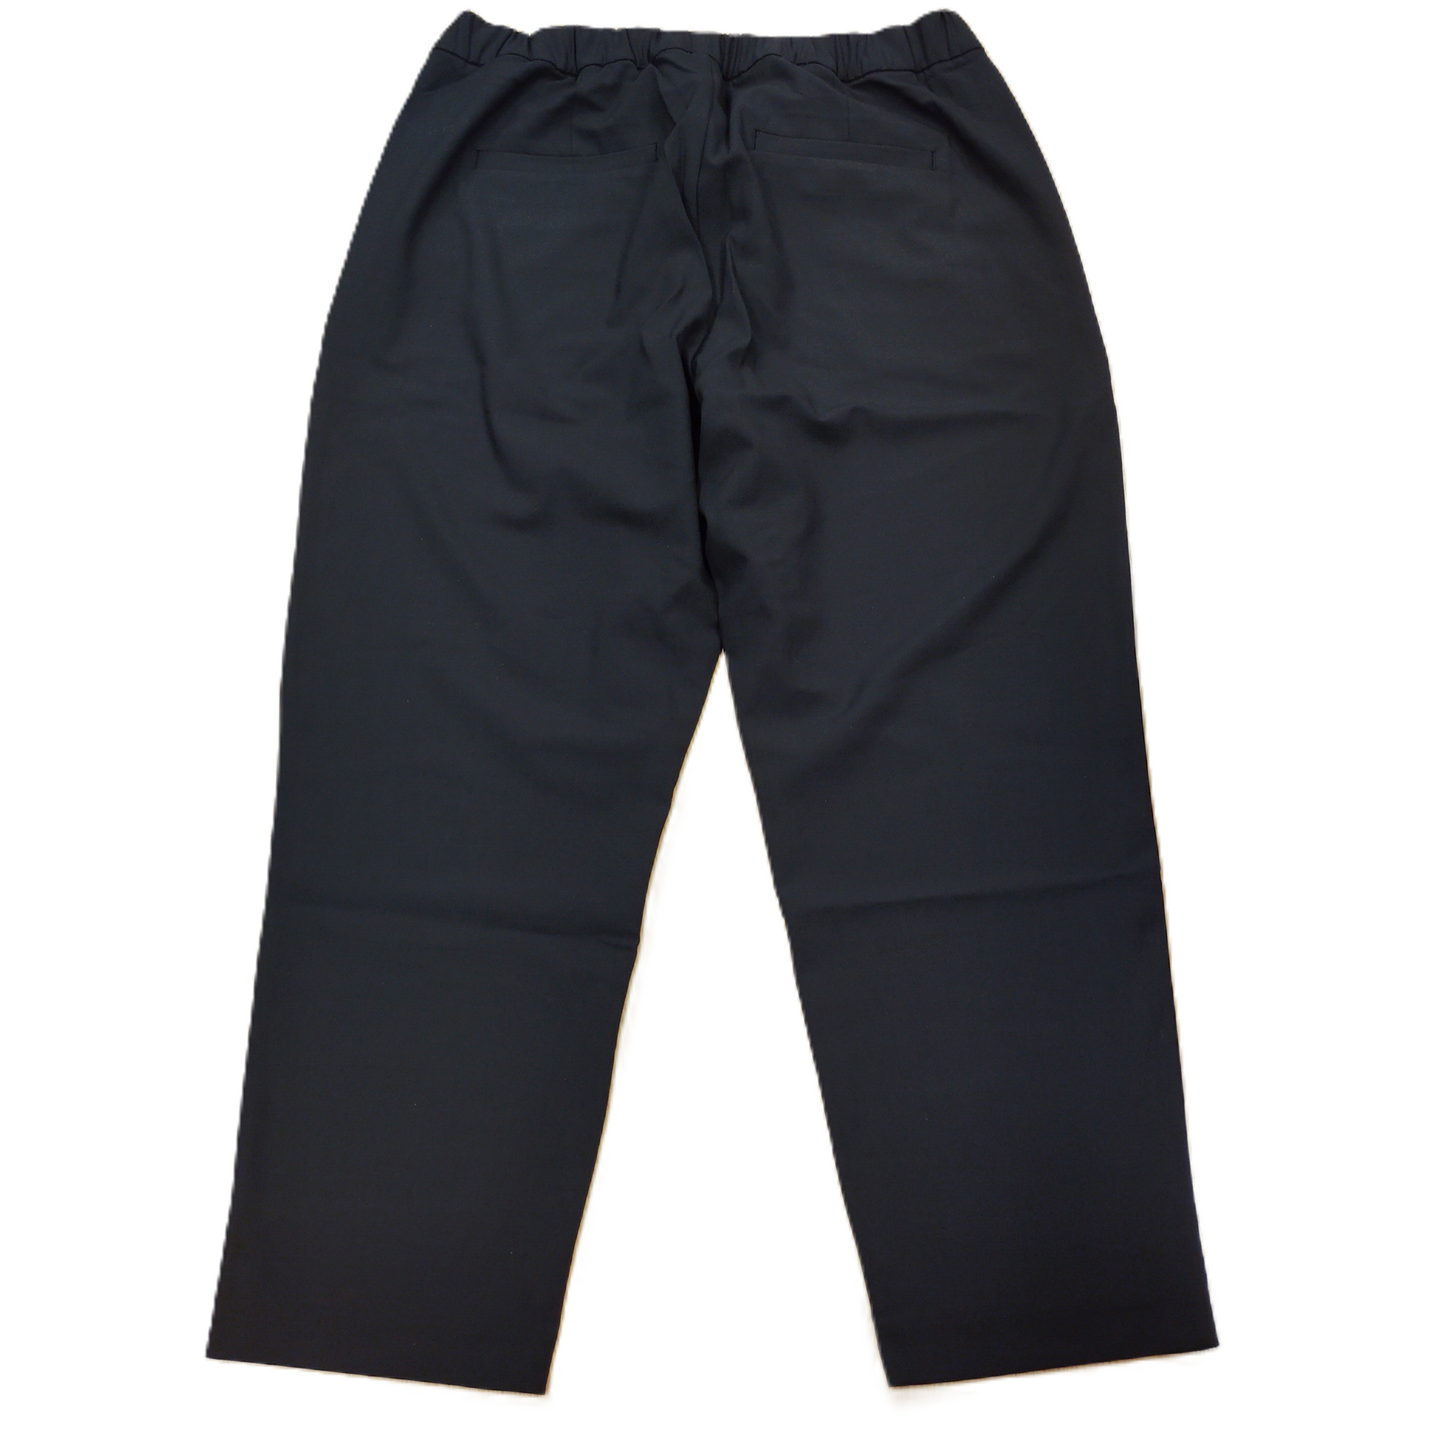 Black Pants Dress By Gap, Size: Xl